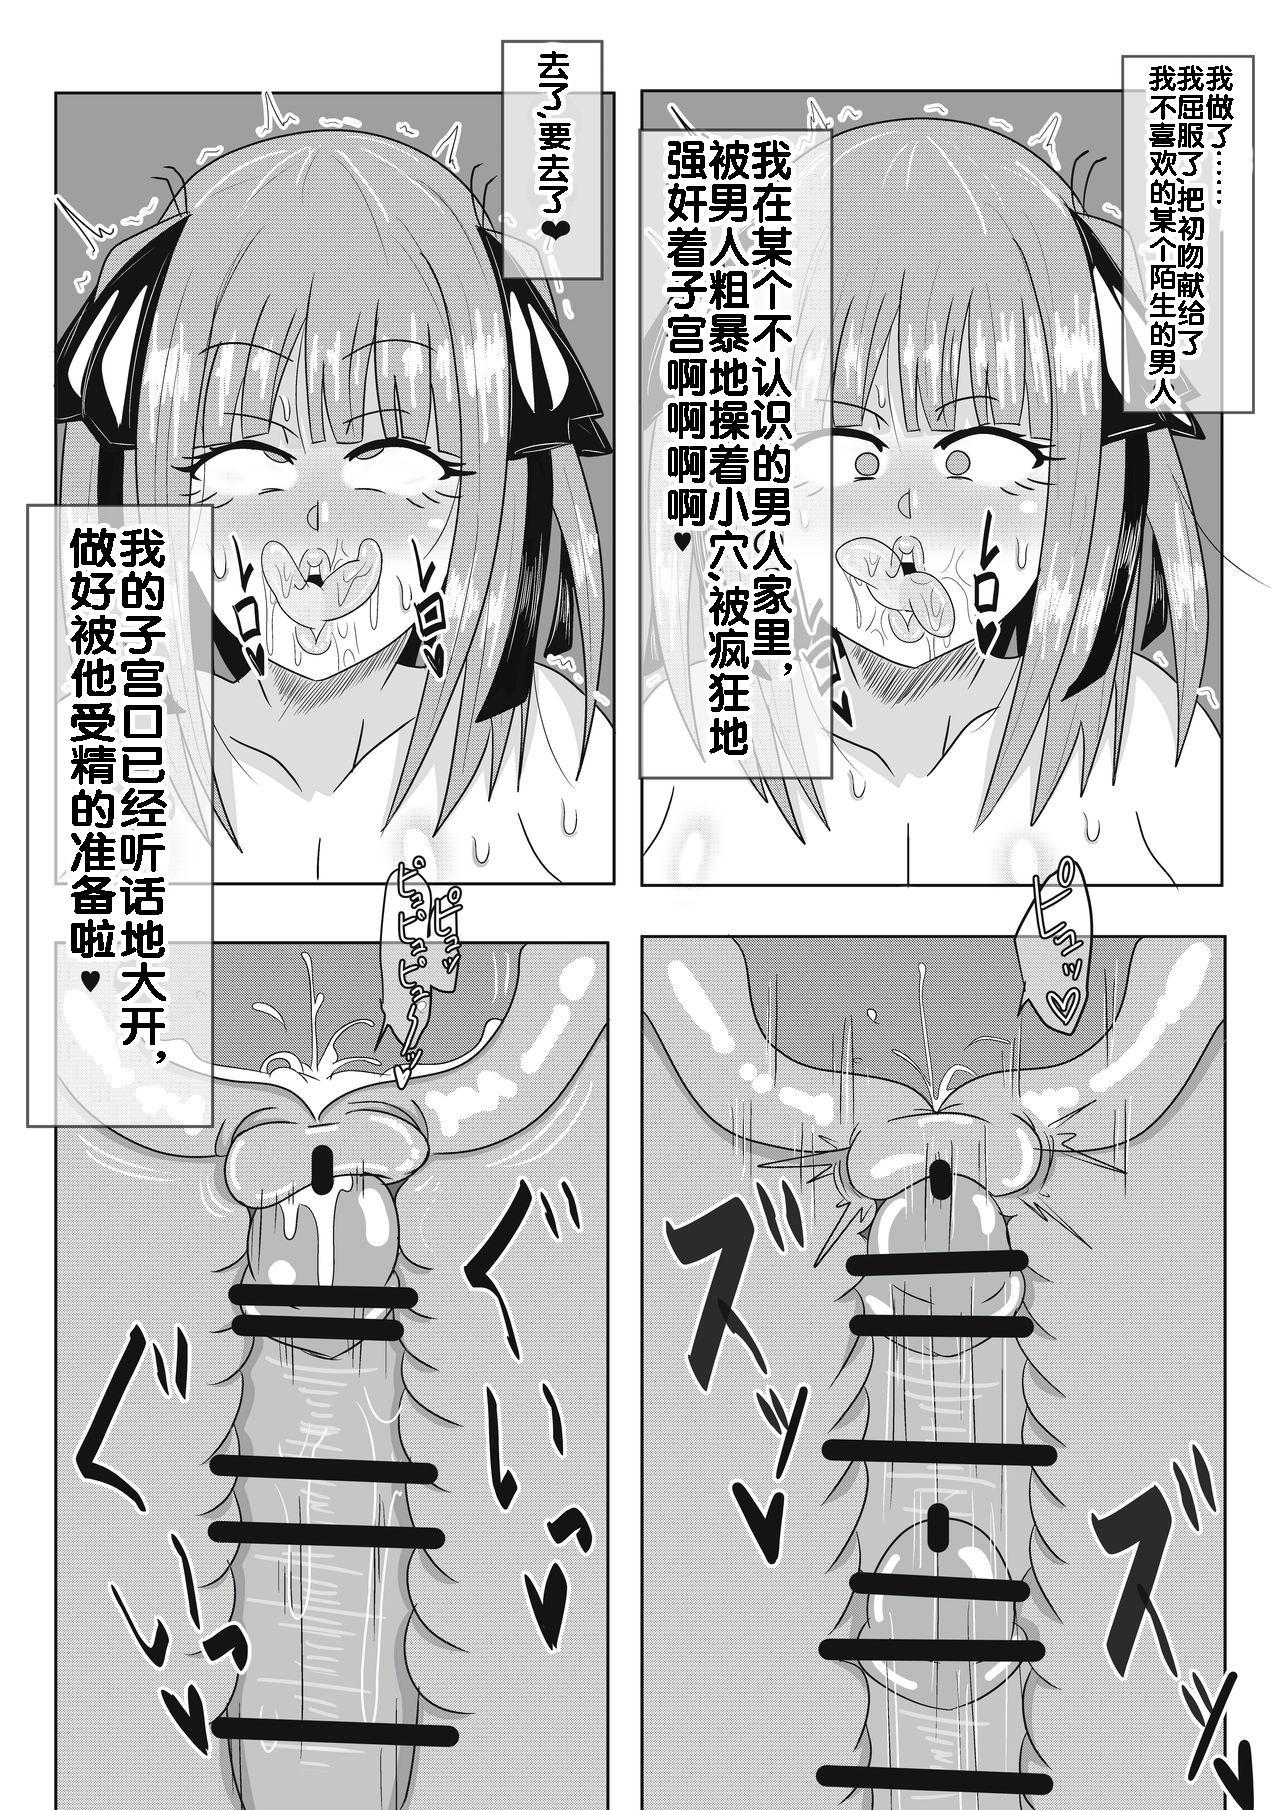 二乃ちゃんの催眠アプリ漫画〈前編〉 8